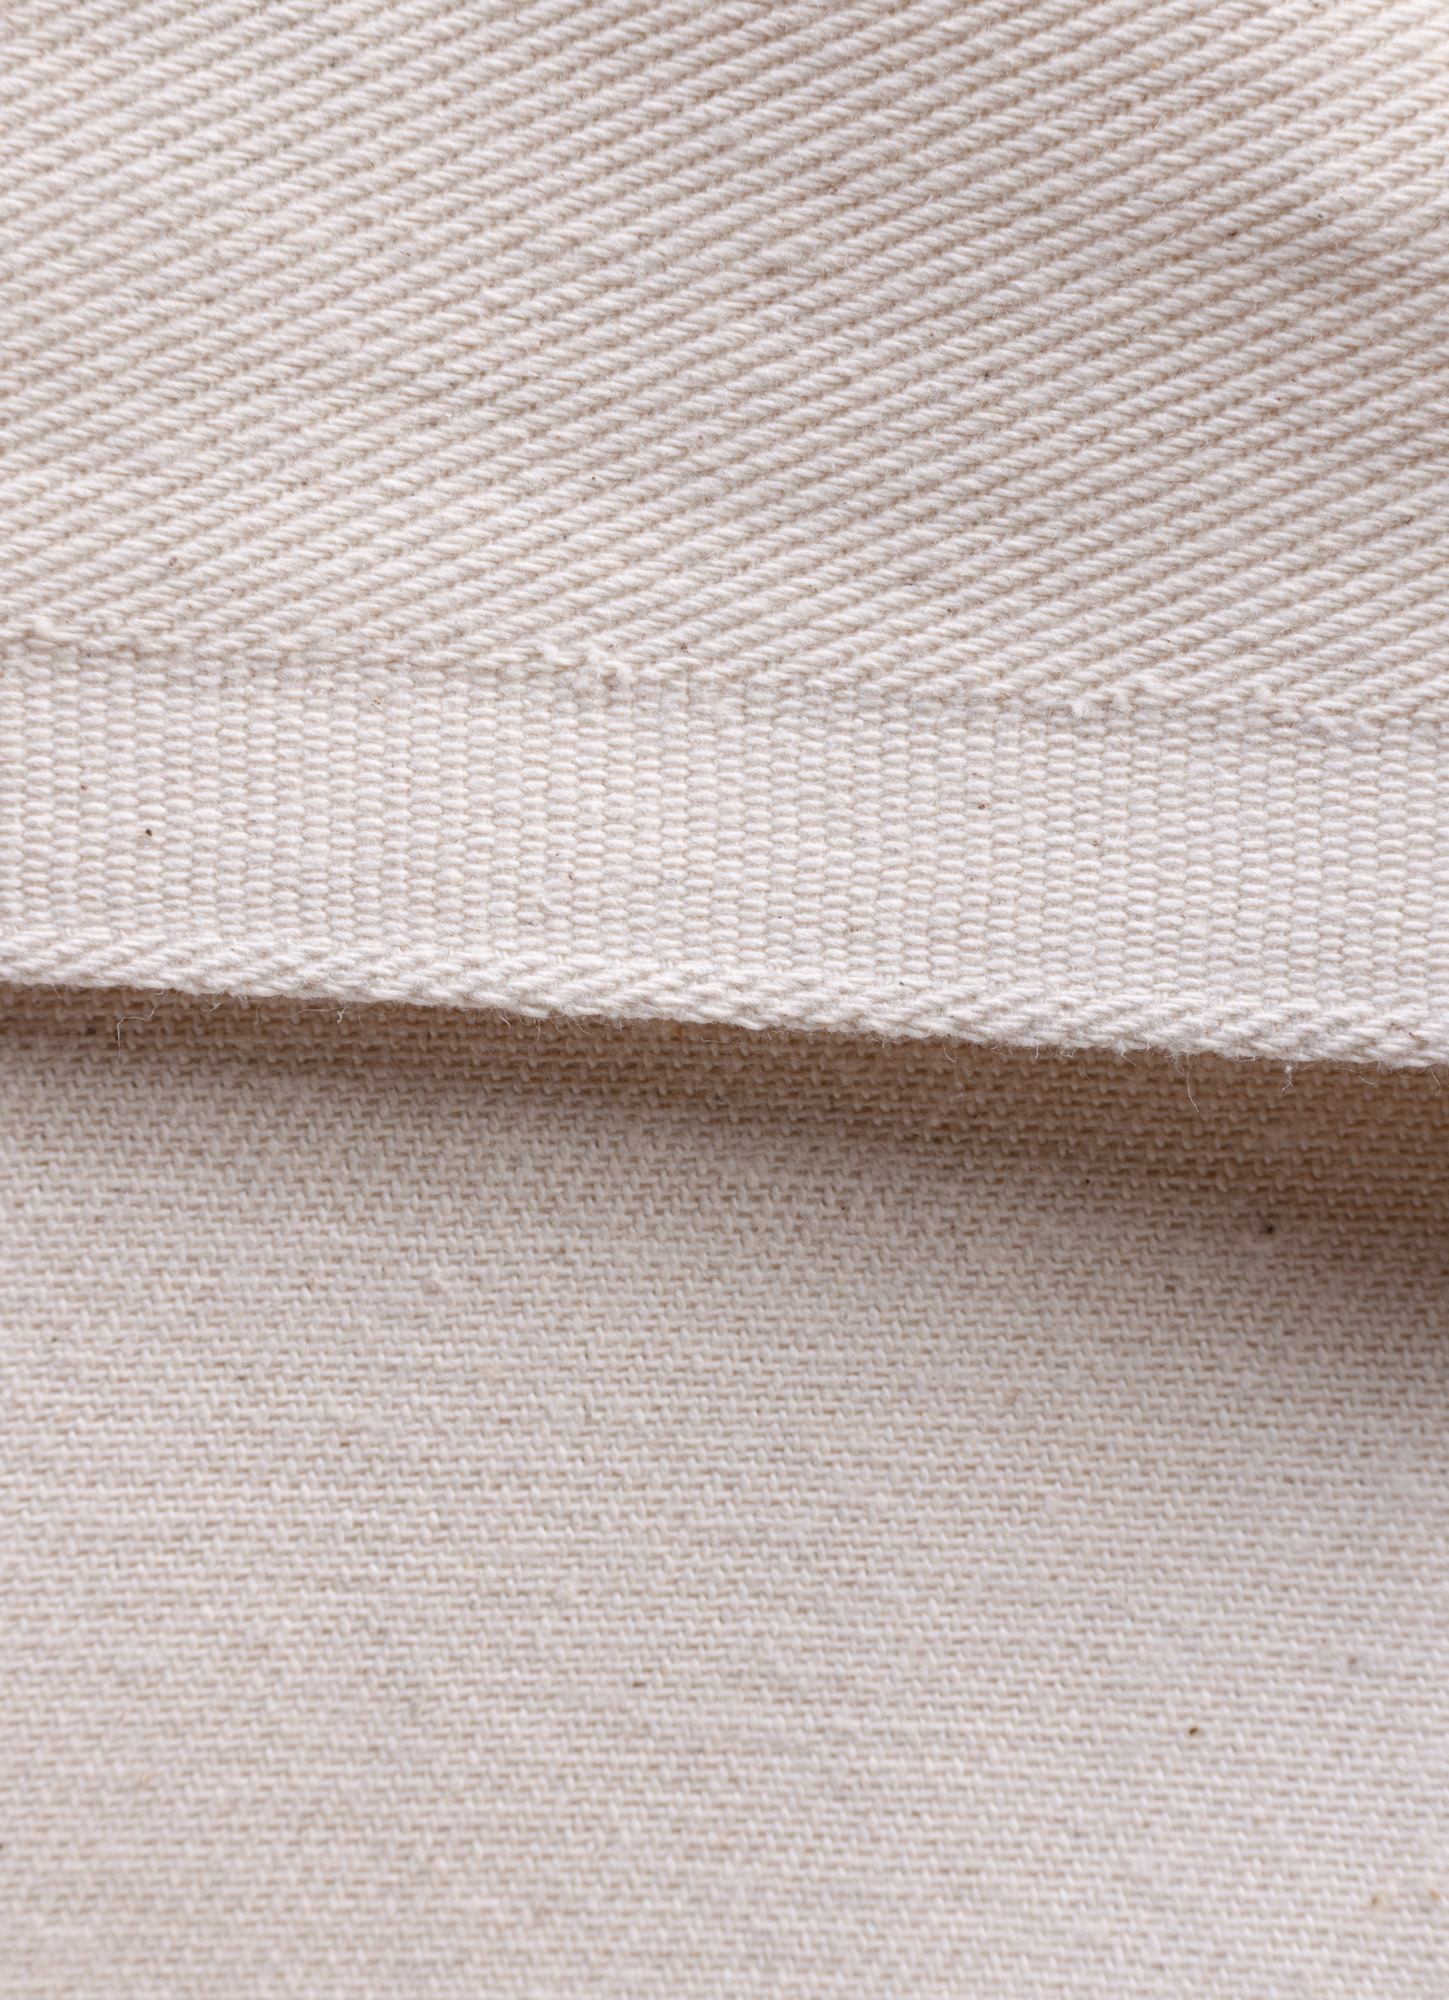 PANART Ungrundierte Baumwolle twill 380g 3.20m breit